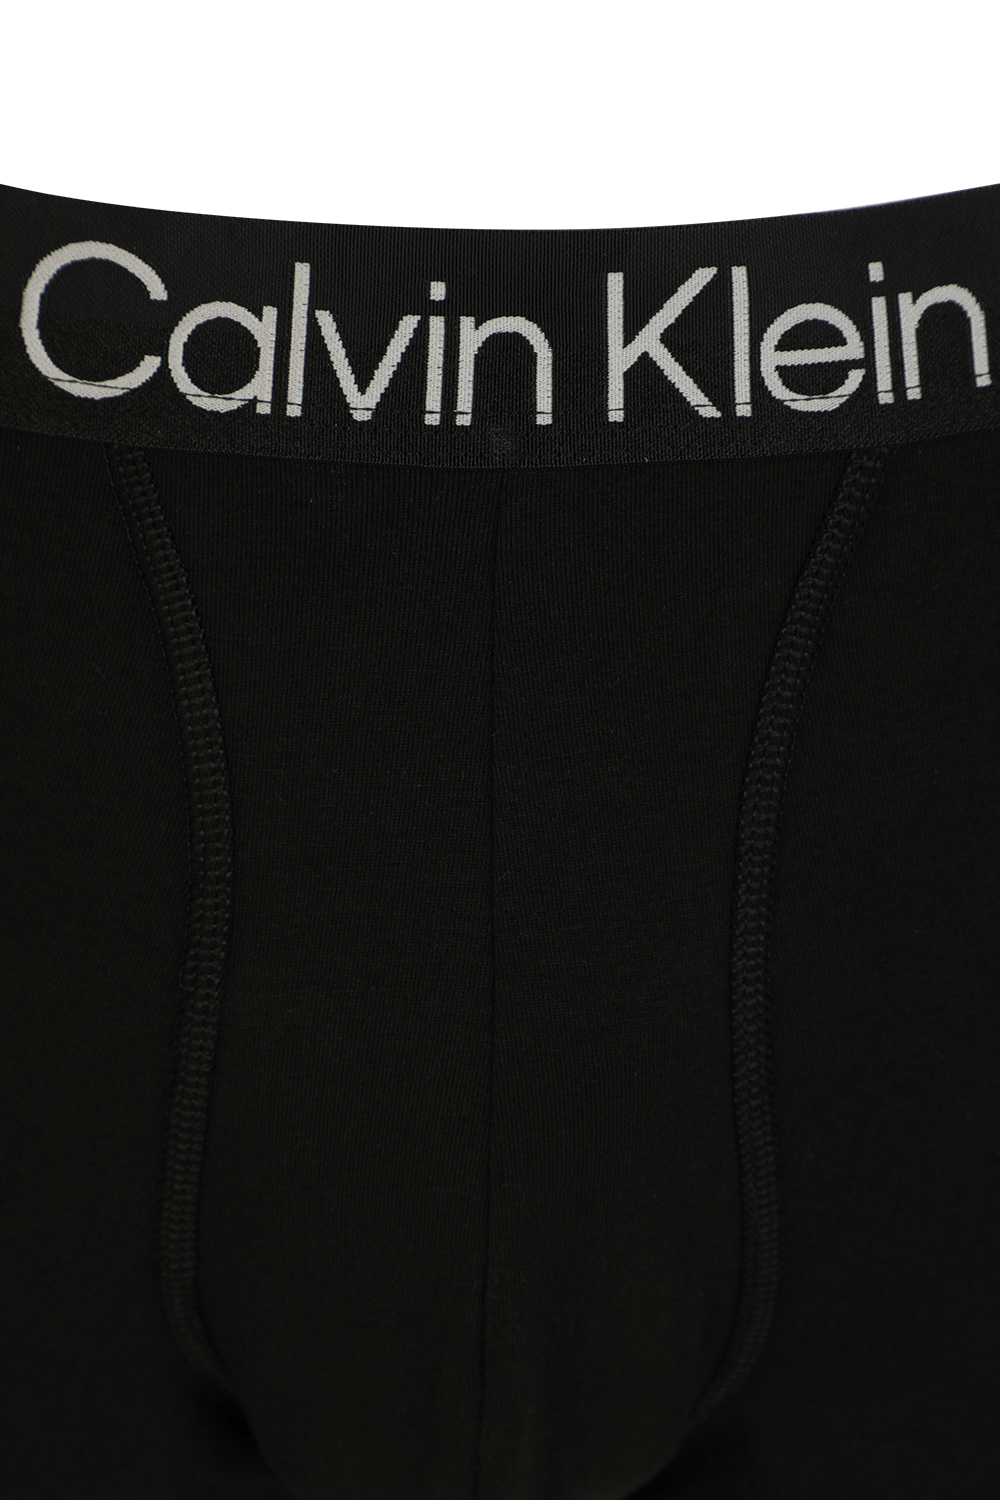 מארז שלישיית תחתוני בוקסר עם רצועה ממותגת בגווני שחור לבן ואפור CALVIN KLEIN